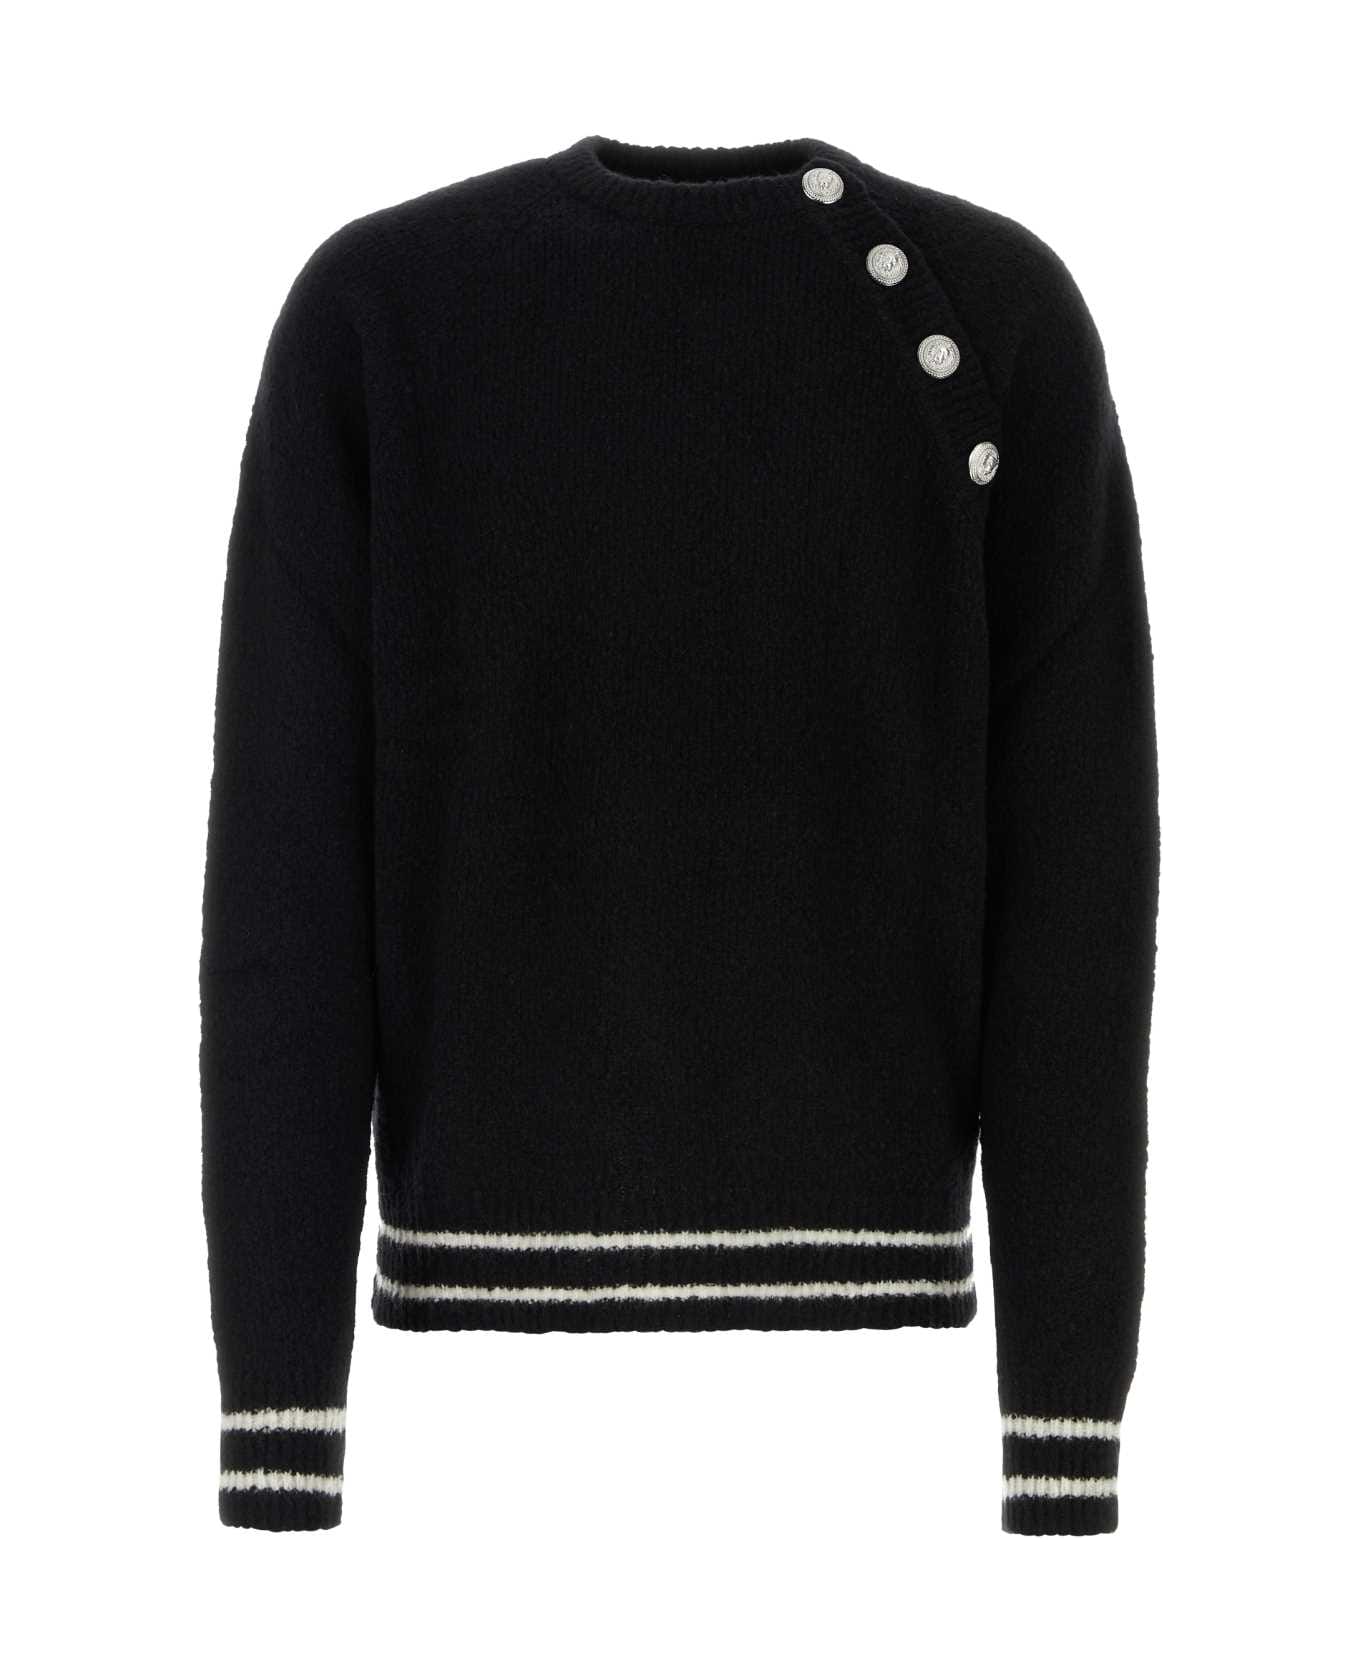 Balmain Wool Blend Sweater - 0PANOIR